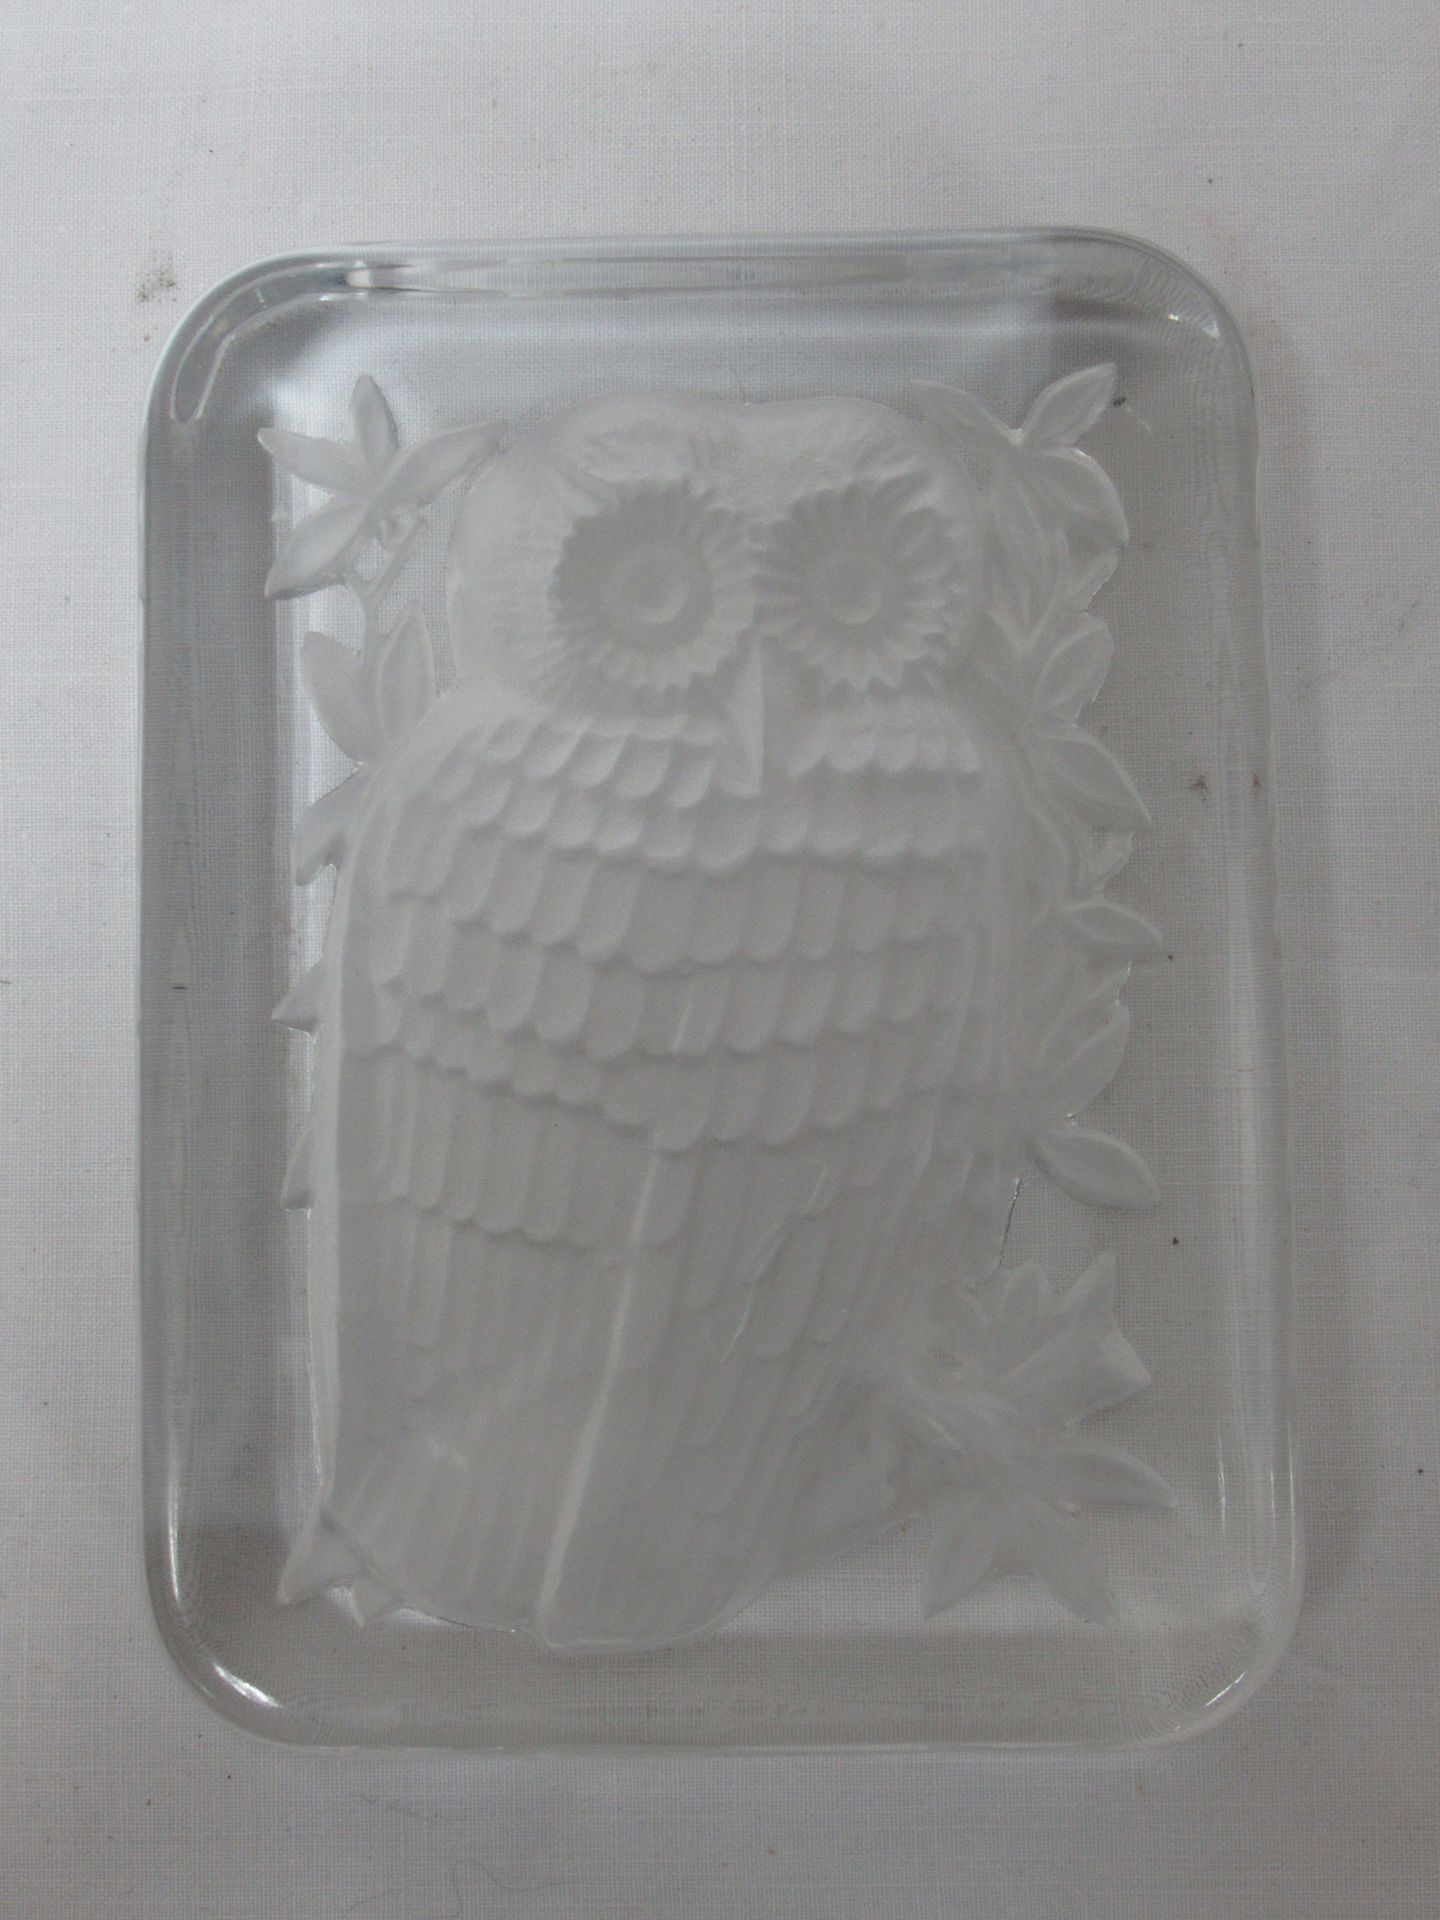 Null Fermacarte DAUM FRANCE in cristallo bianco e satinato, con gufo. 13 x 9 cm